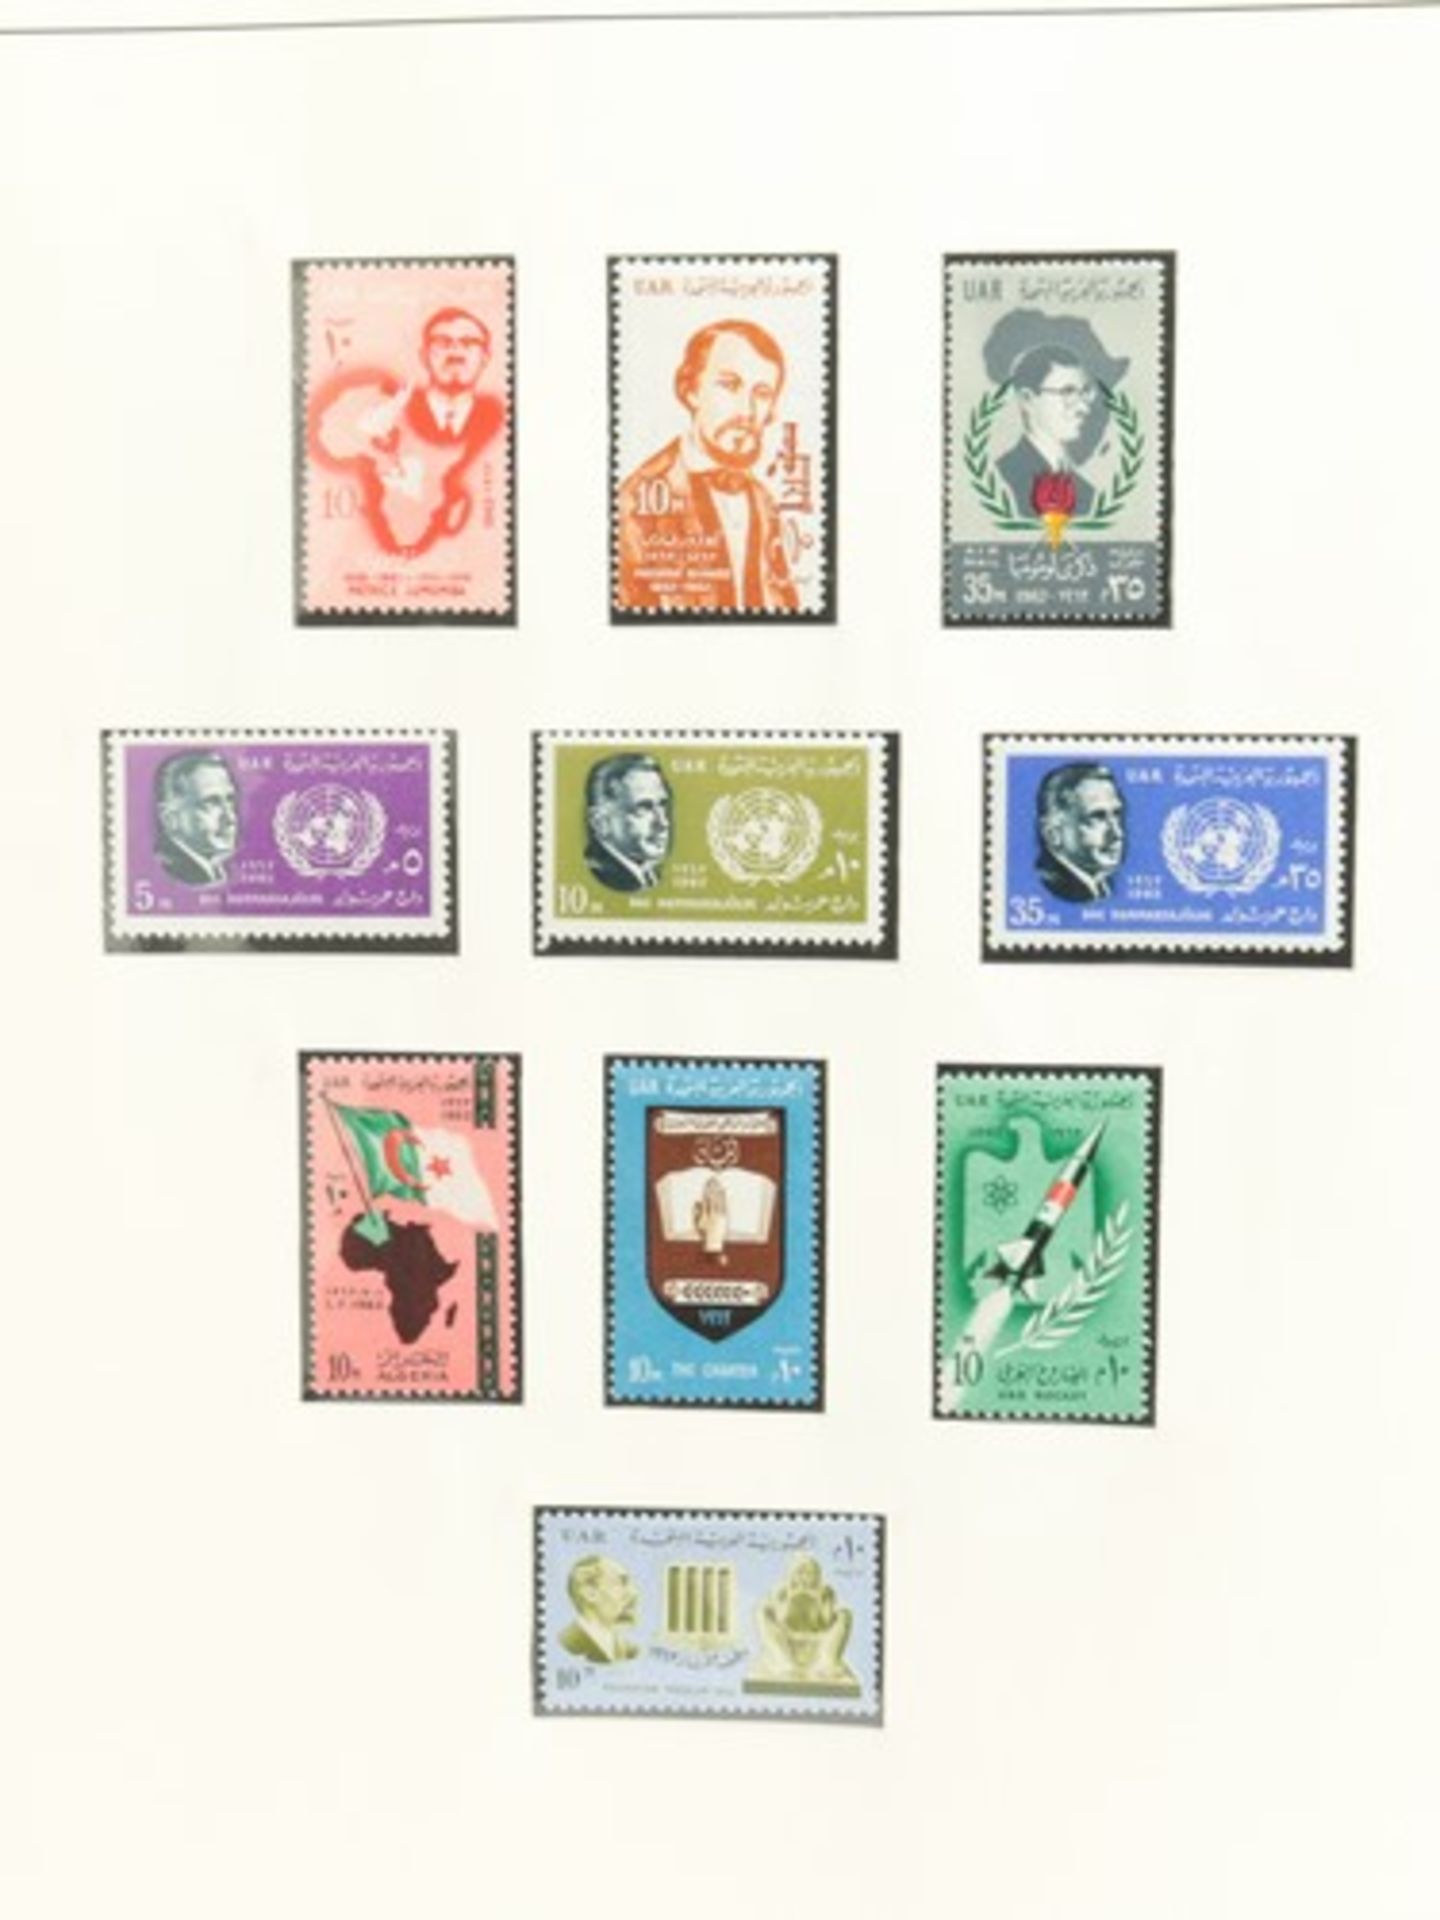 Alben - Weltab ca. 1960, 4x versch. Alben, darunter Lindner, Schaubek, u.a., UdSSR, Dänemark, - Bild 3 aus 5